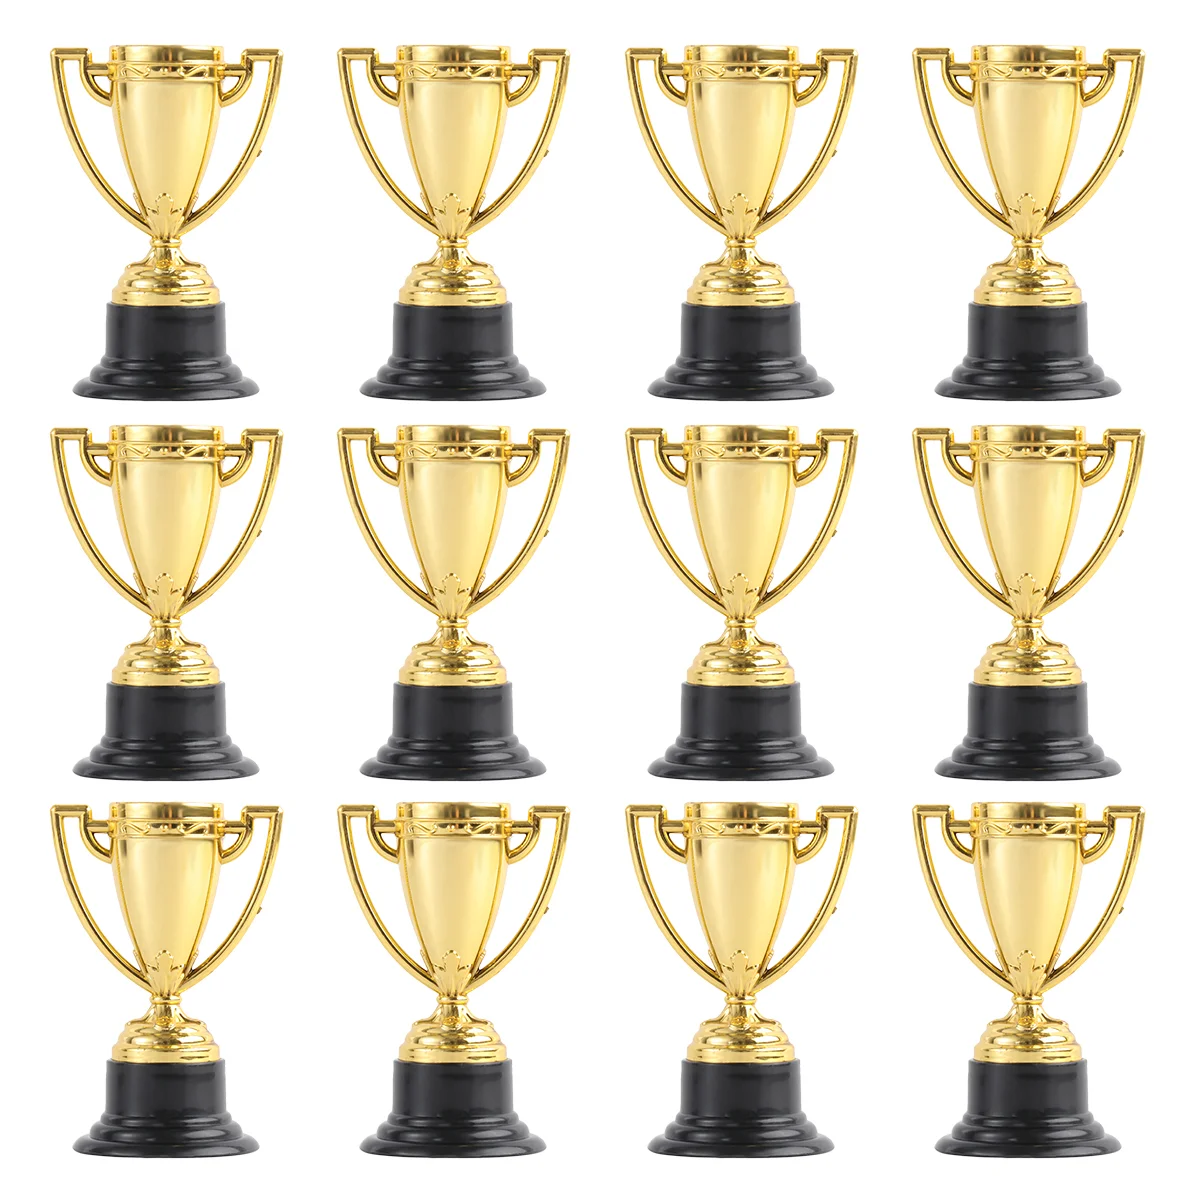 

12 шт. оптовые подарки, трофей награды для взрослых на церемонию, трофей с золотой наградой, золотистый трофей, трофей для студентов